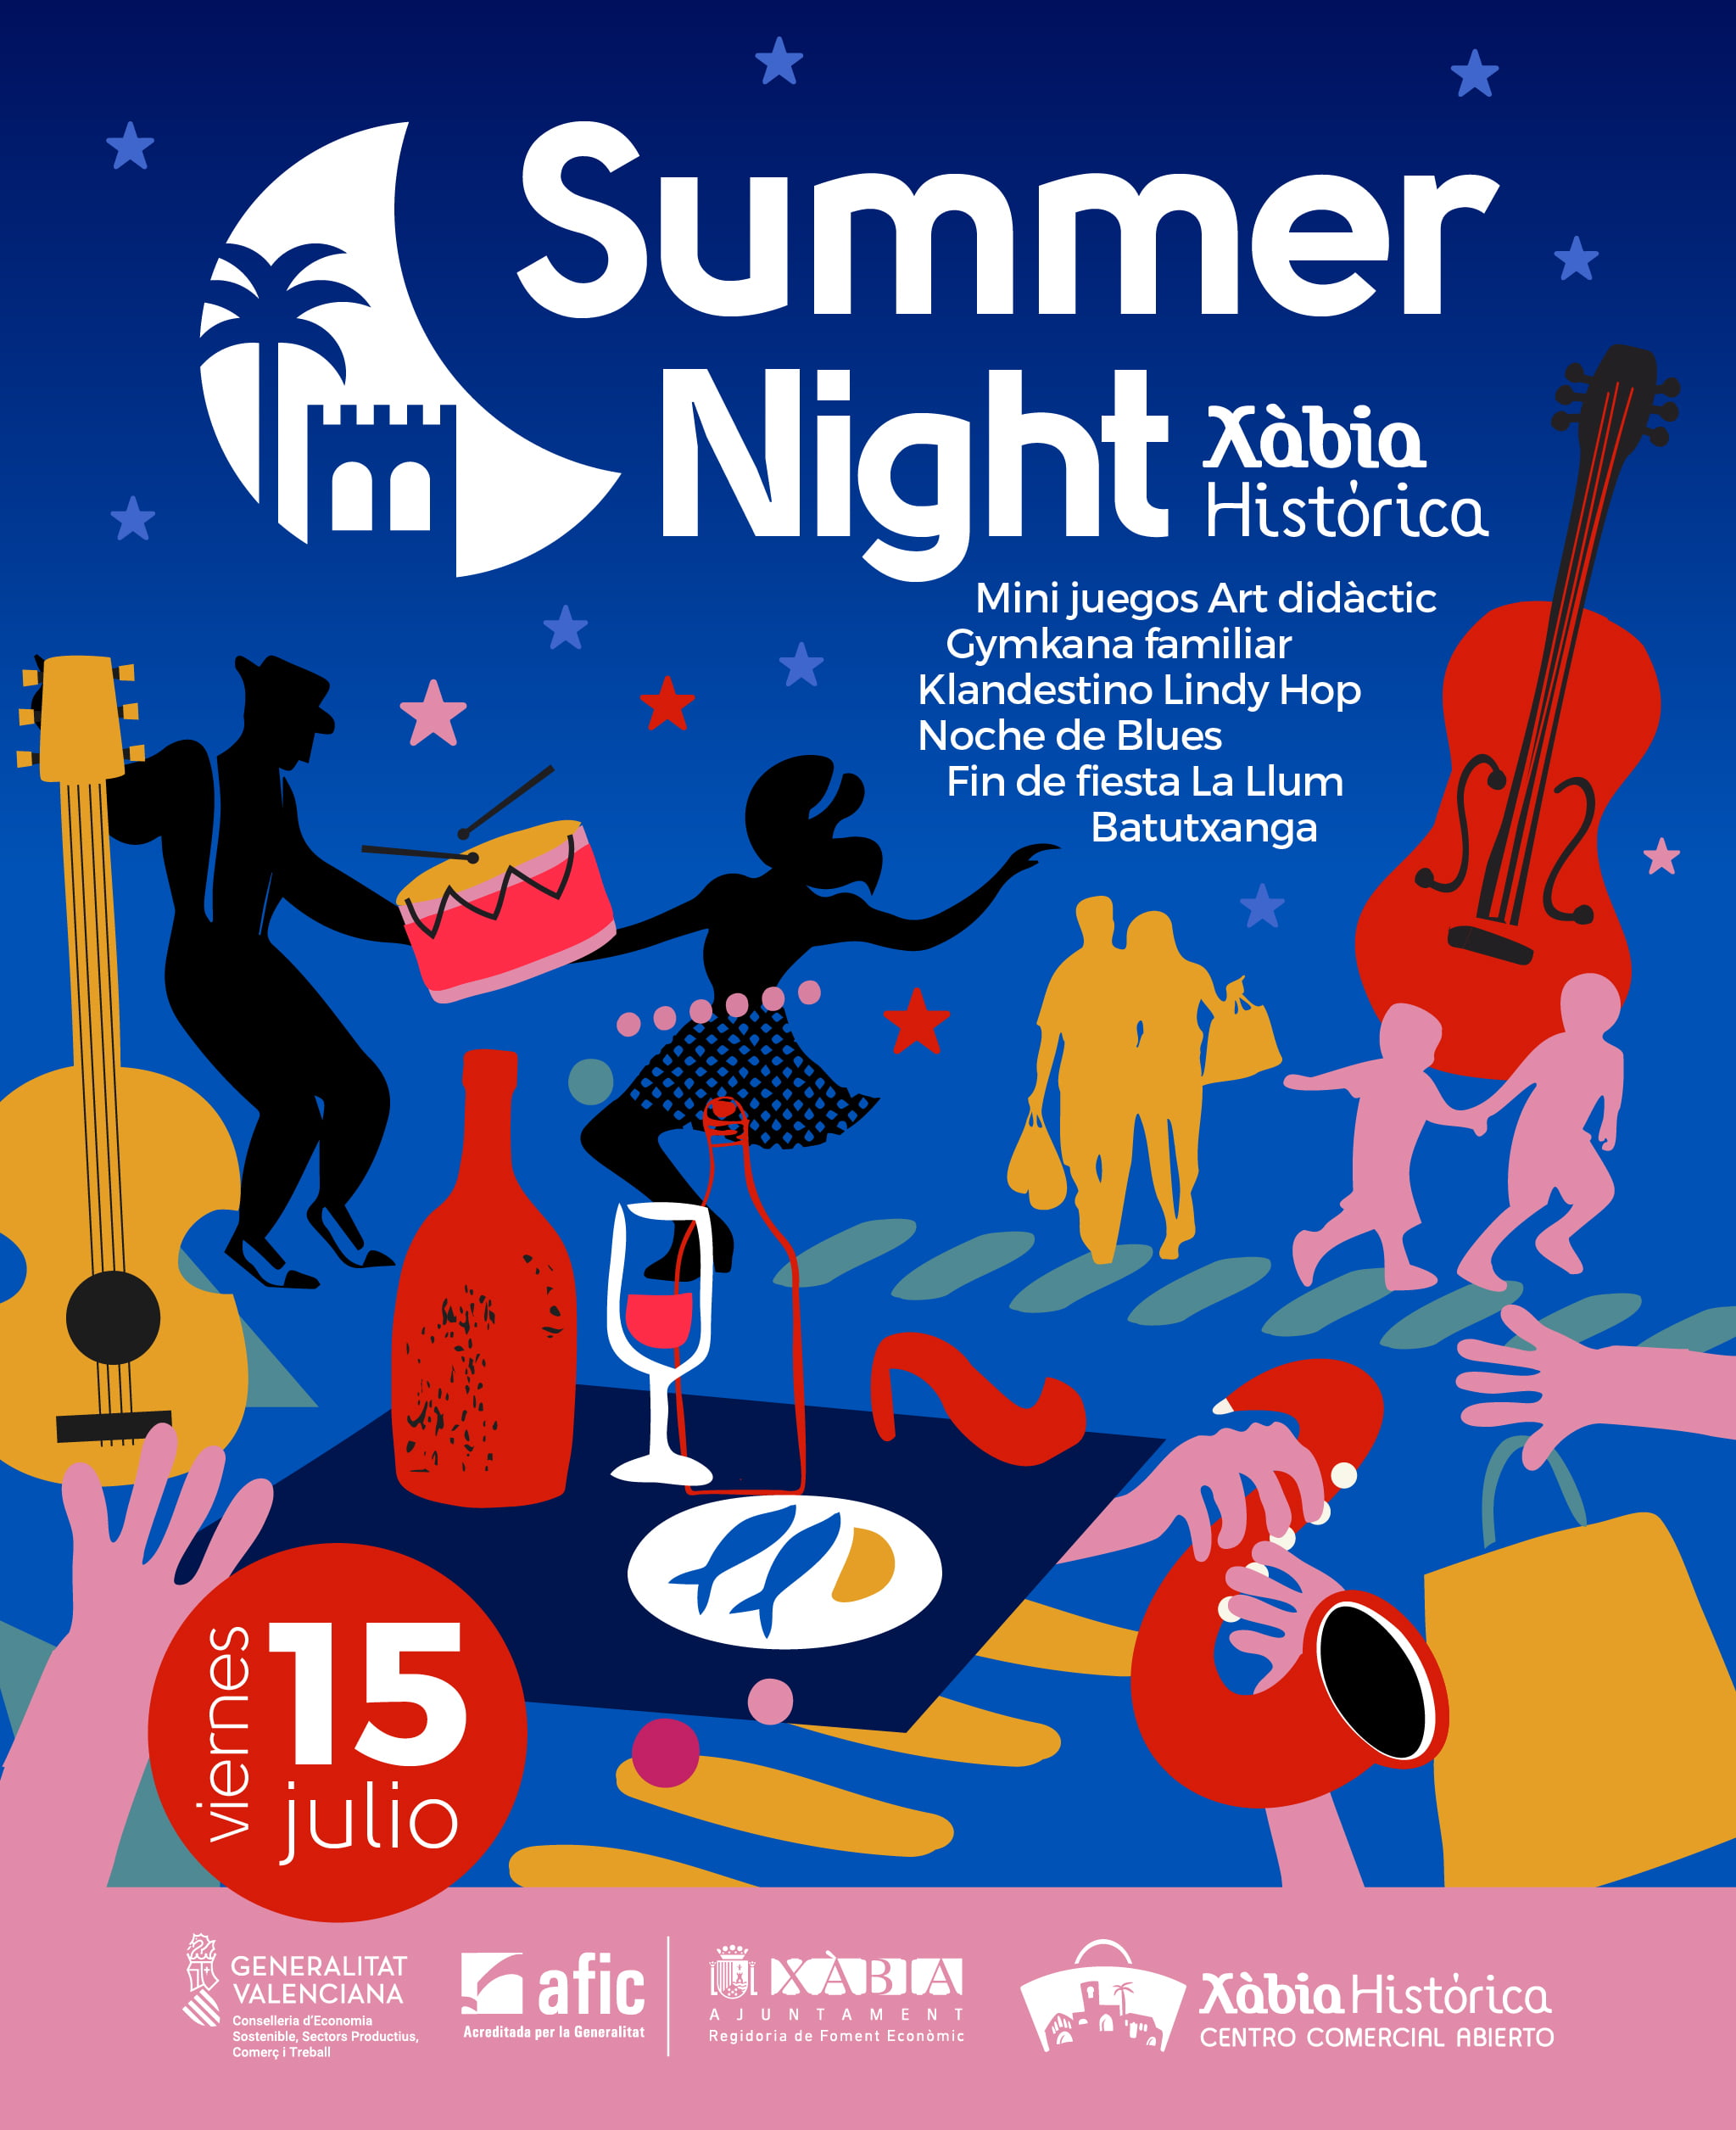 Cartel de la Summer Night de Julio de Xàbia histórica